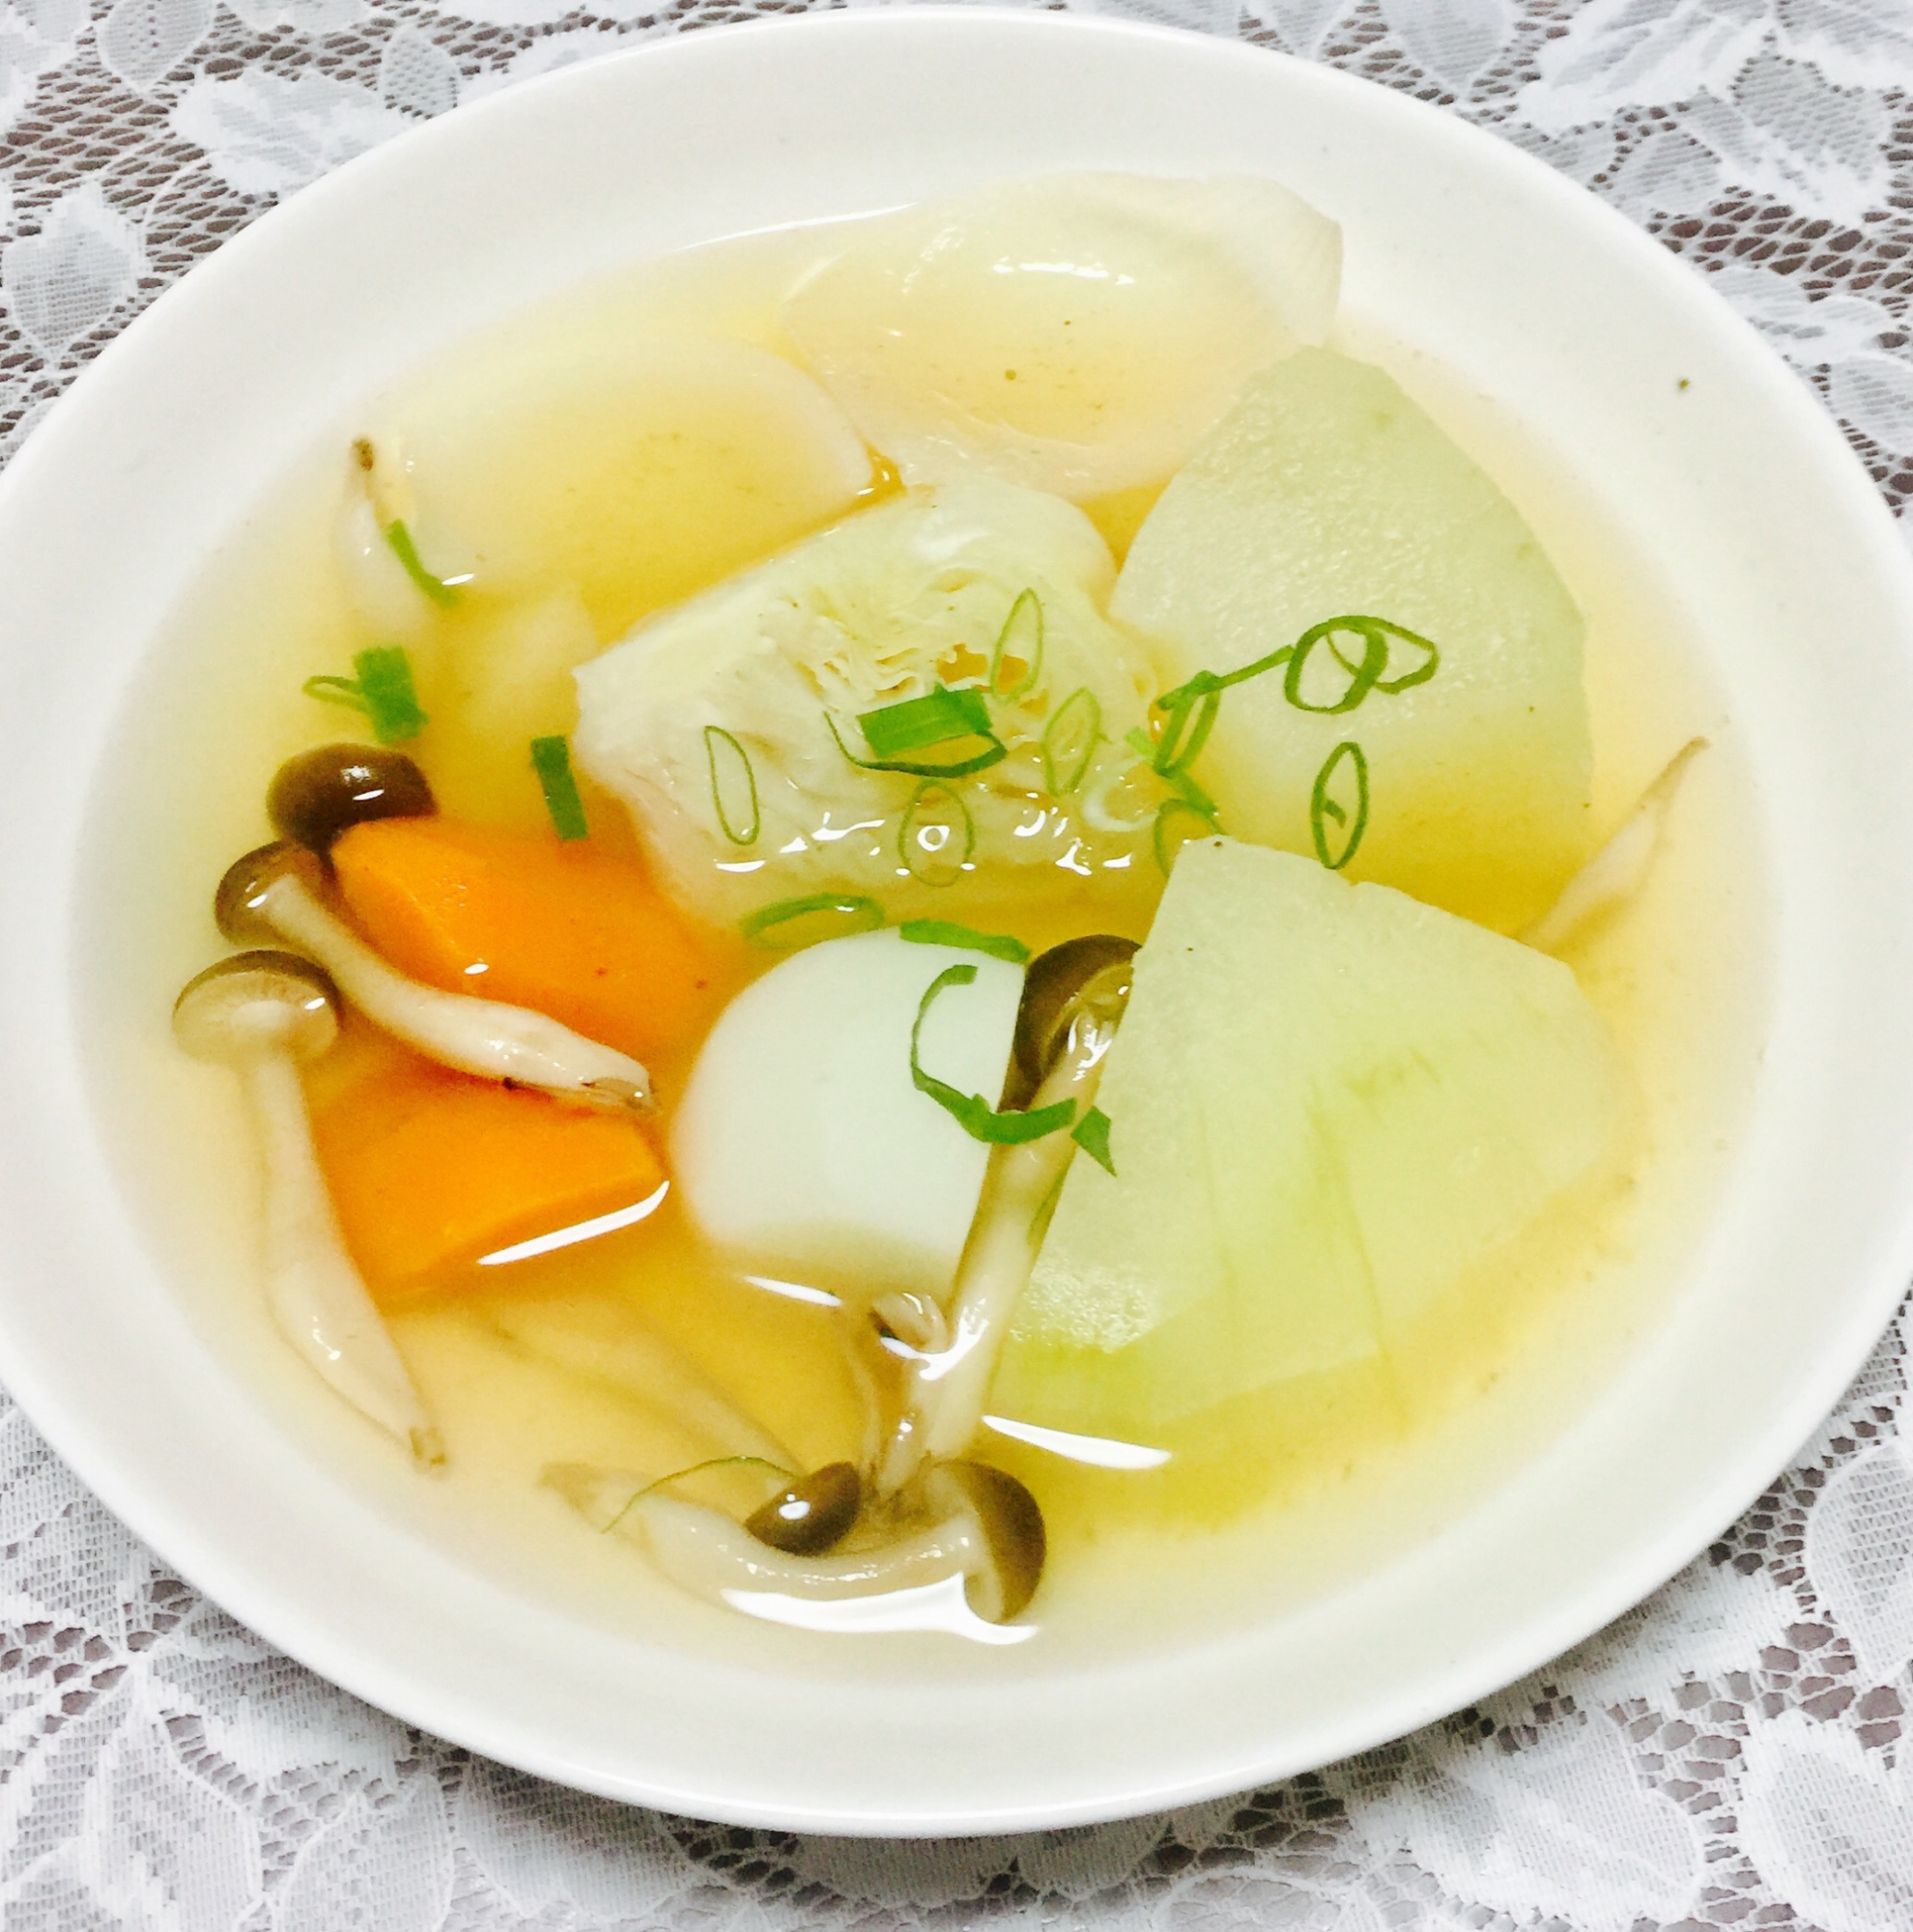 冬瓜がたくさん入った野菜スープ